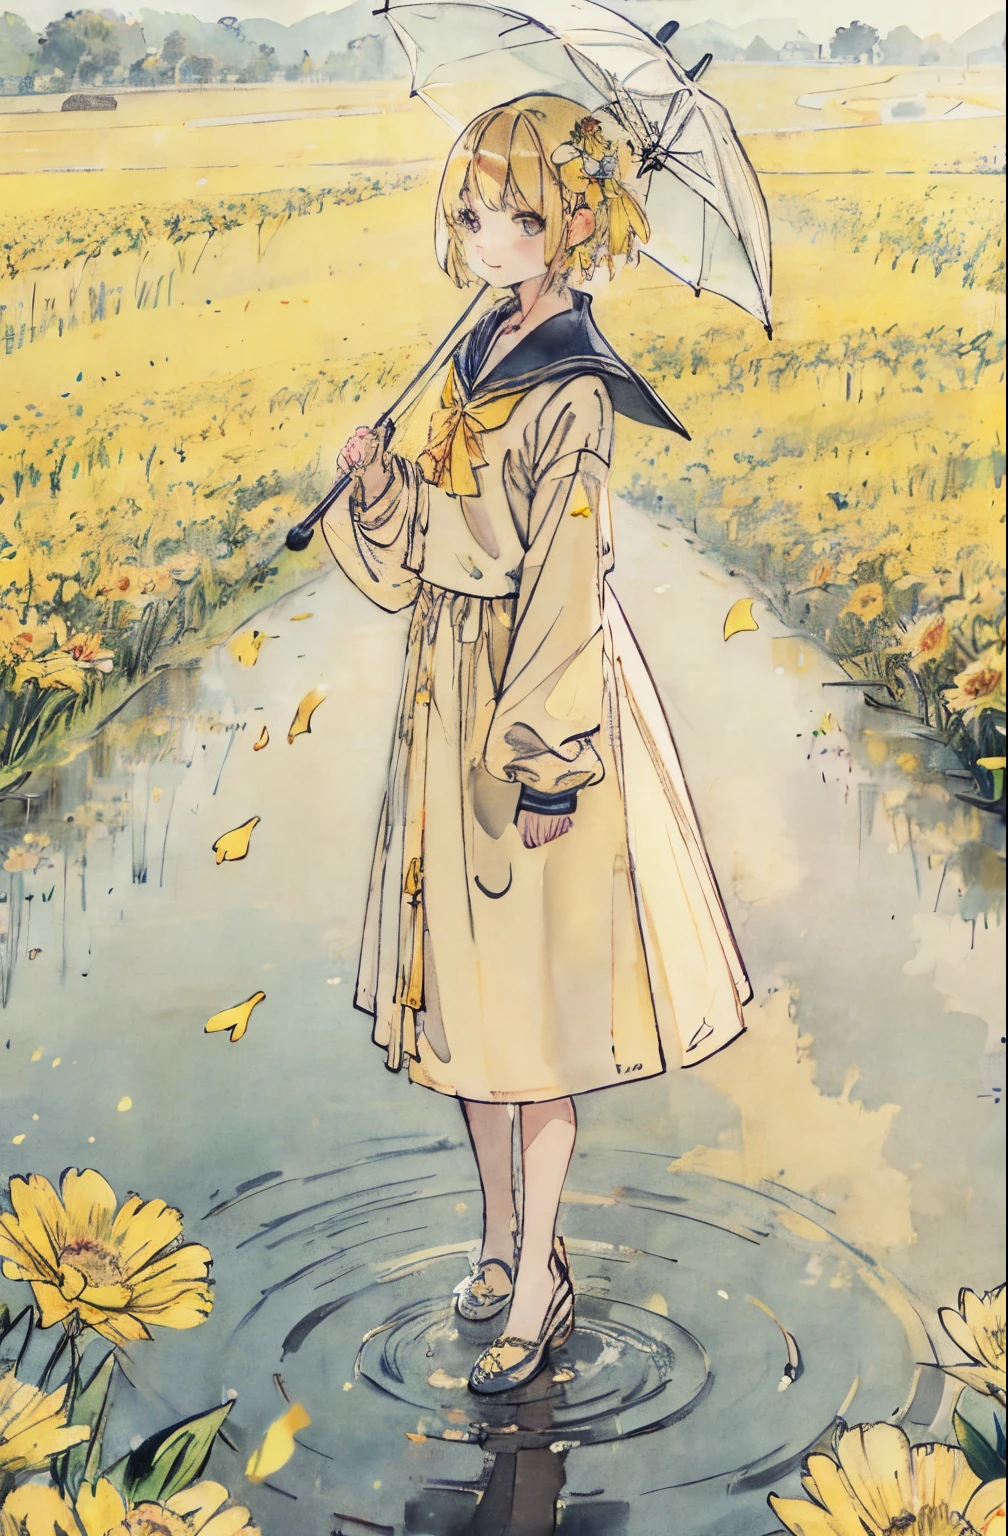 flor amarilla、Cabello amarillo、campo de flores、La lluvia、umbrellas、charco、Reflectores、un traje de marinero